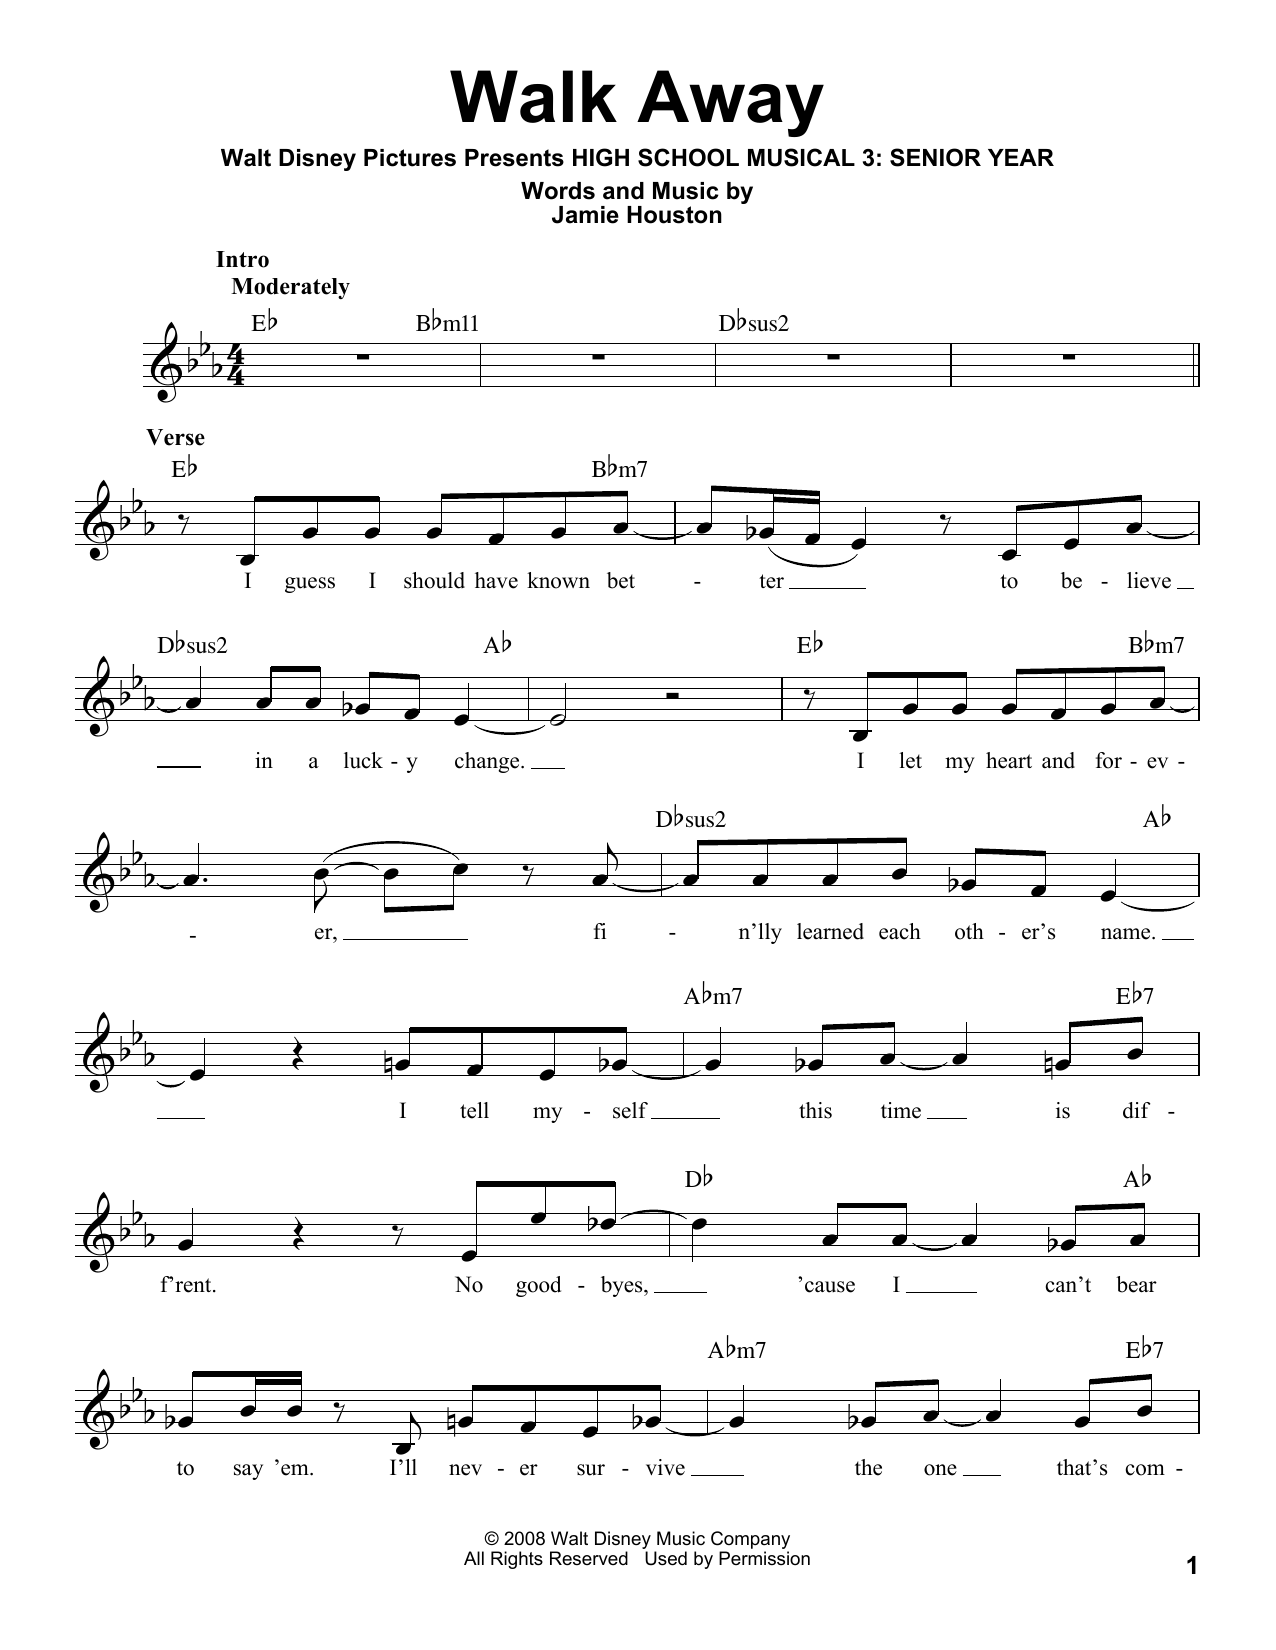 Download High School Musical 3 Walk Away Sheet Music